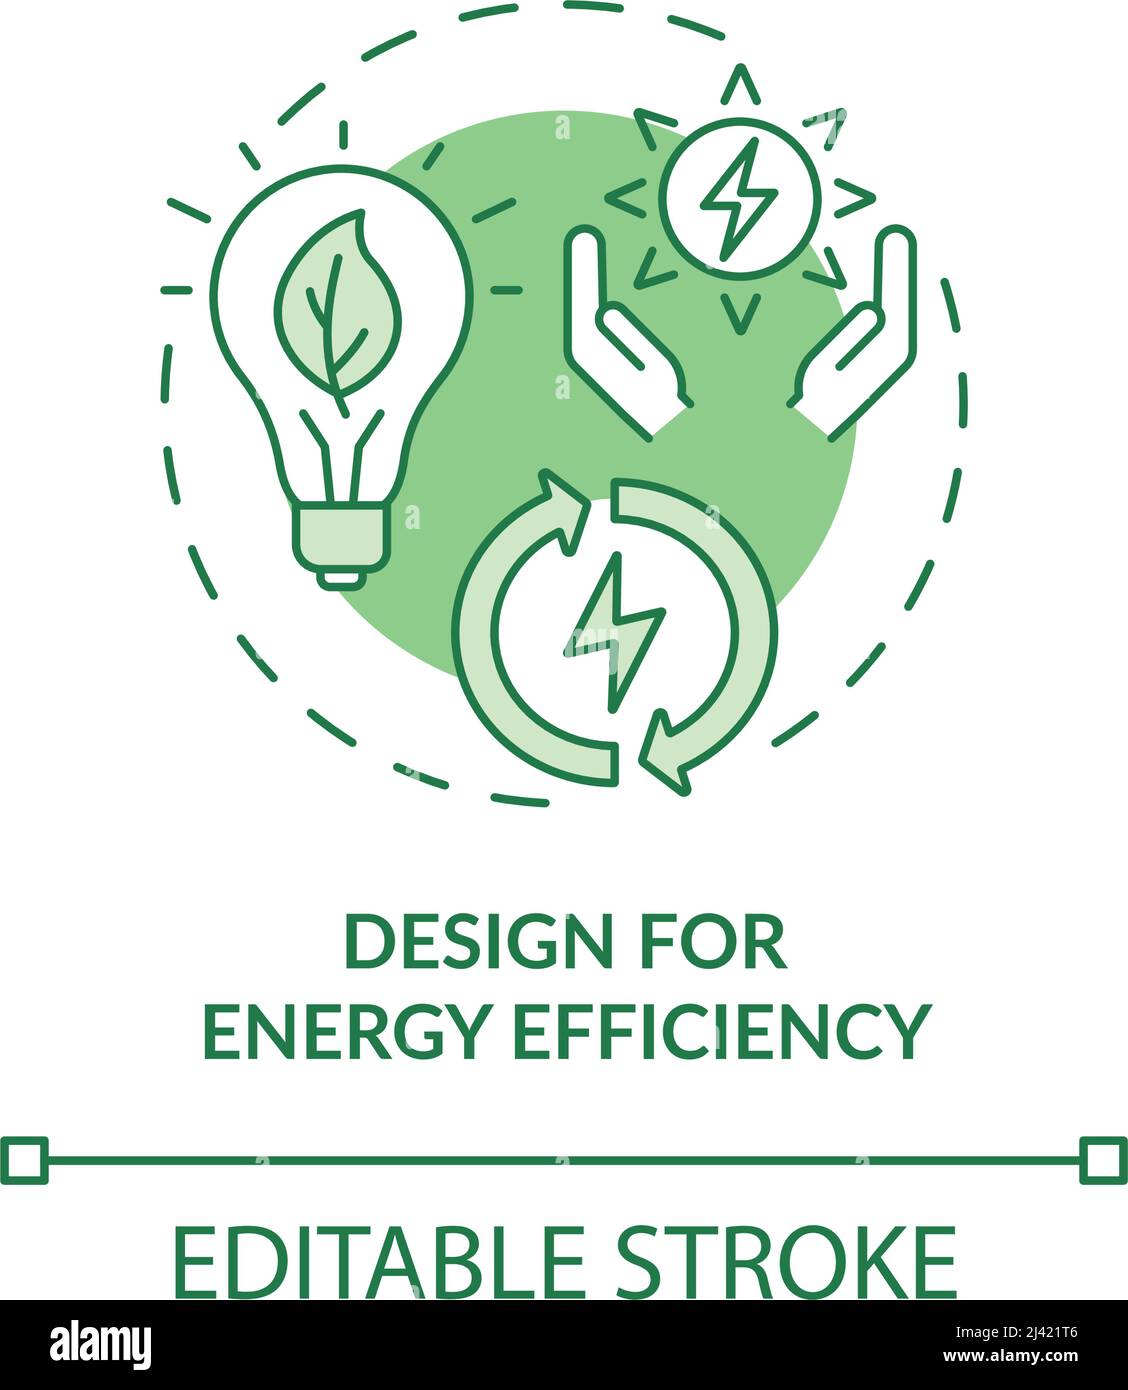 Energy efficiency design green concept icon Stock Vector